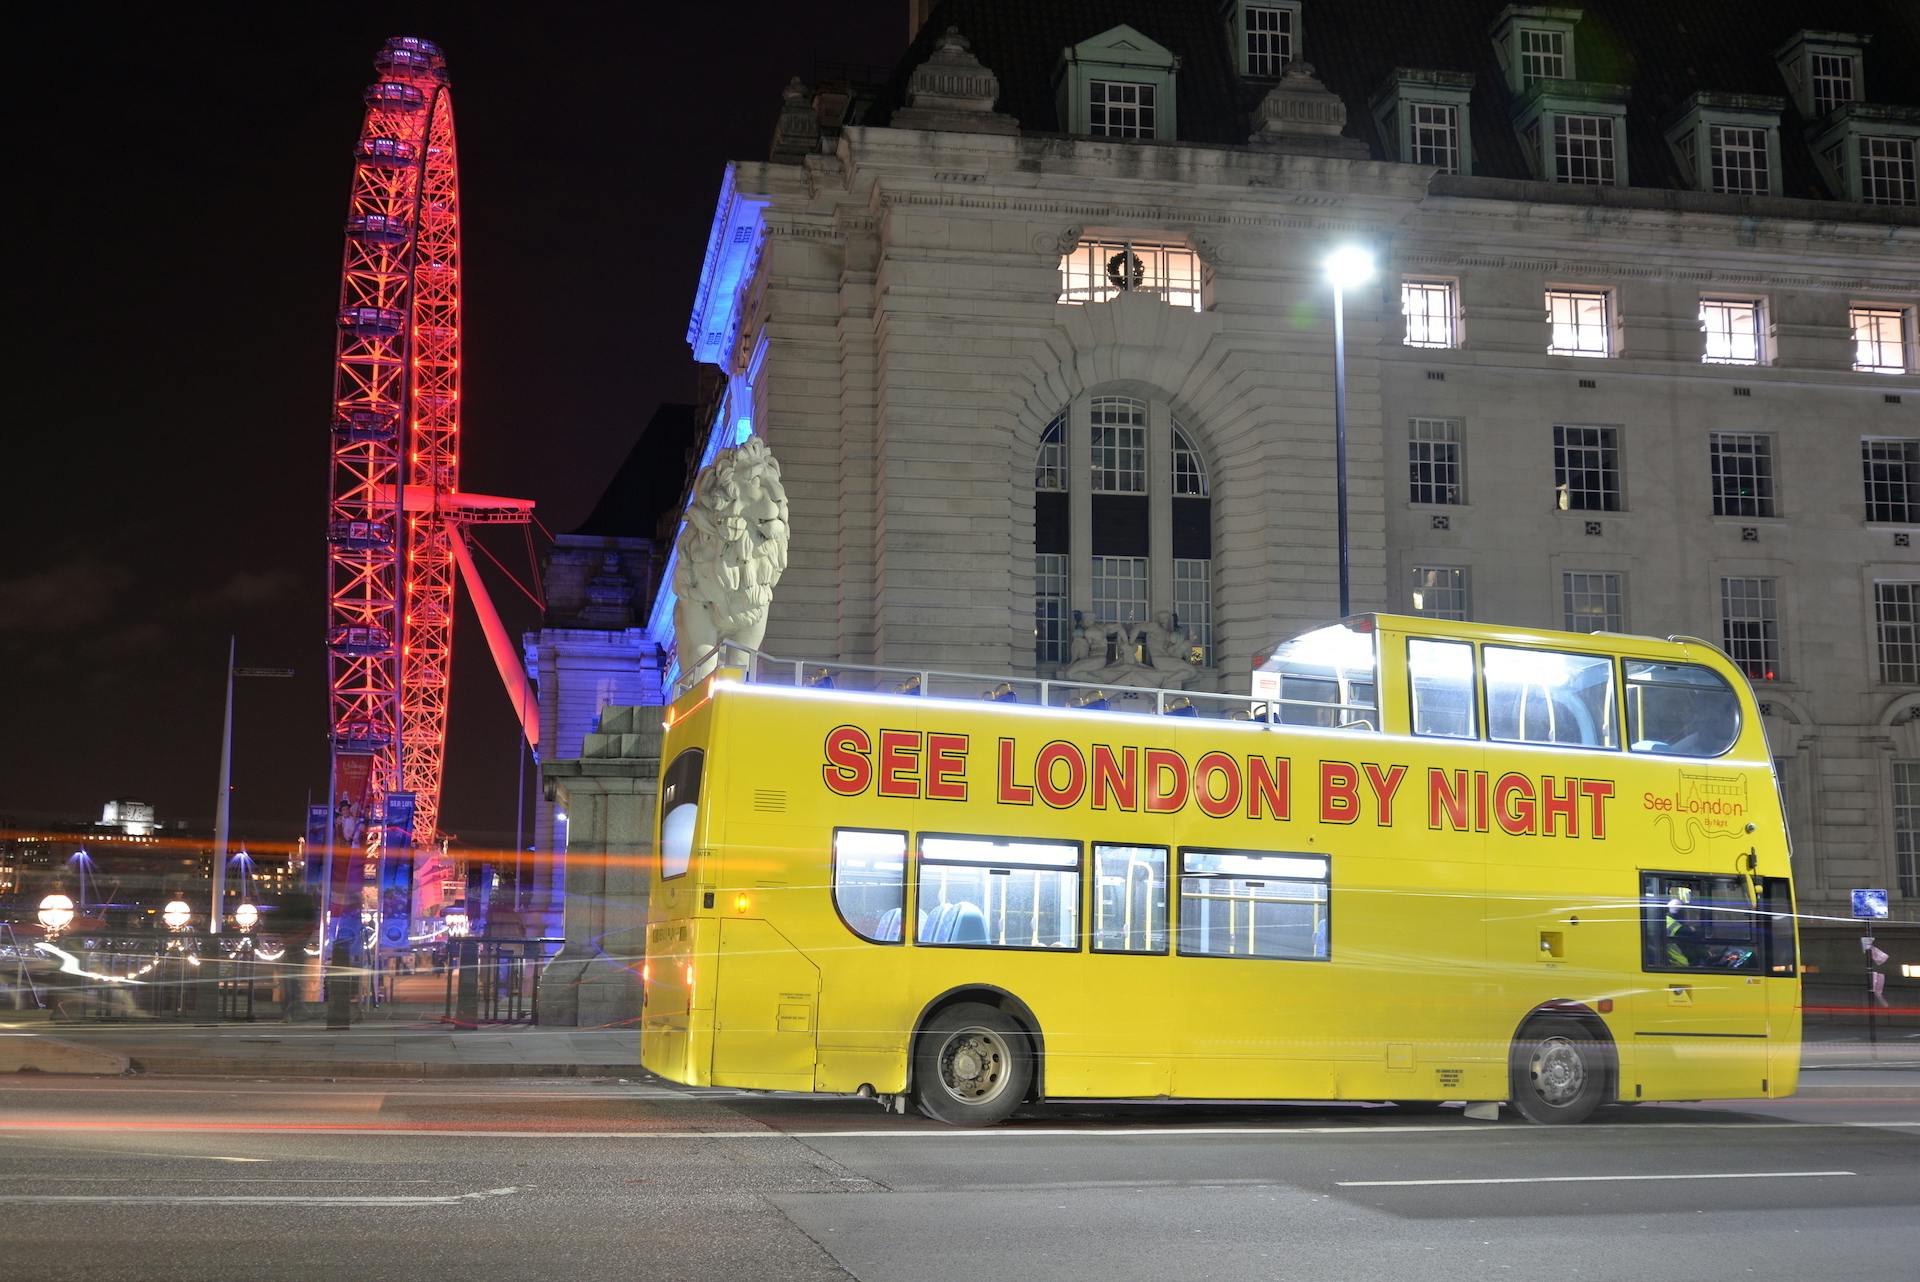 Bekijk Londen in de nacht met een bustour 